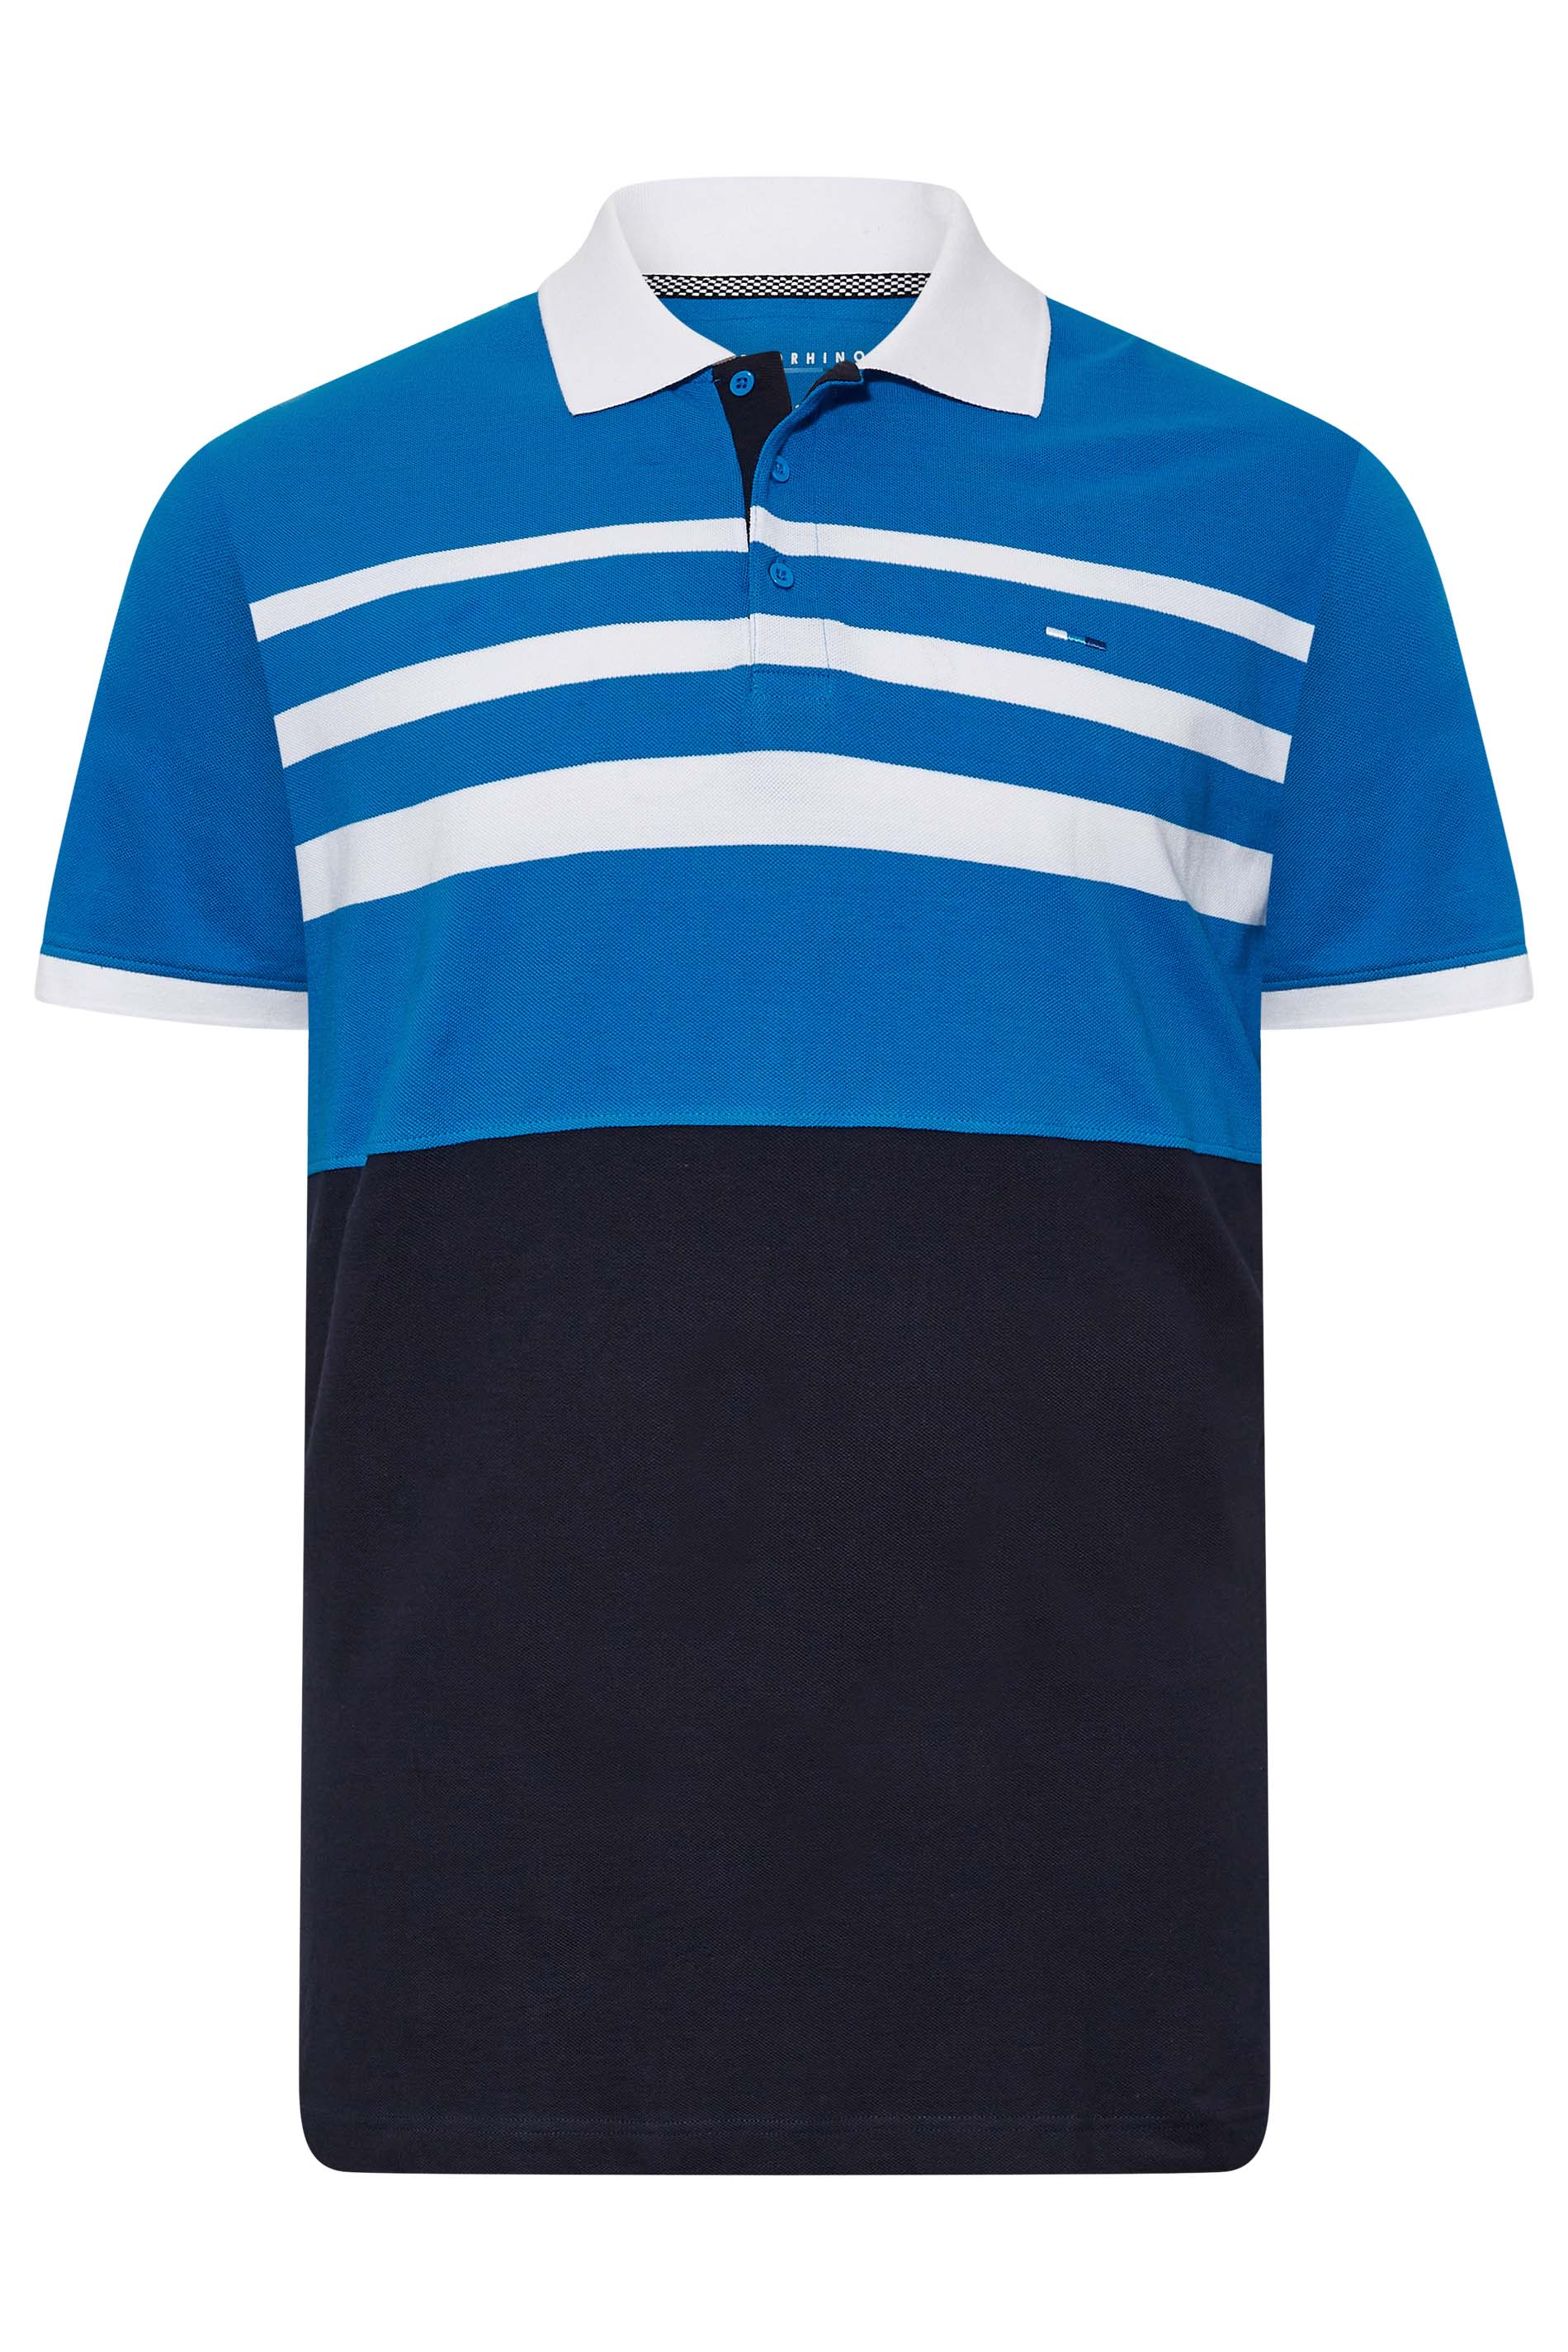 BadRhino Big & Tall Blue & Black Contrast Stripe Polo Shirt | BadRhino 3